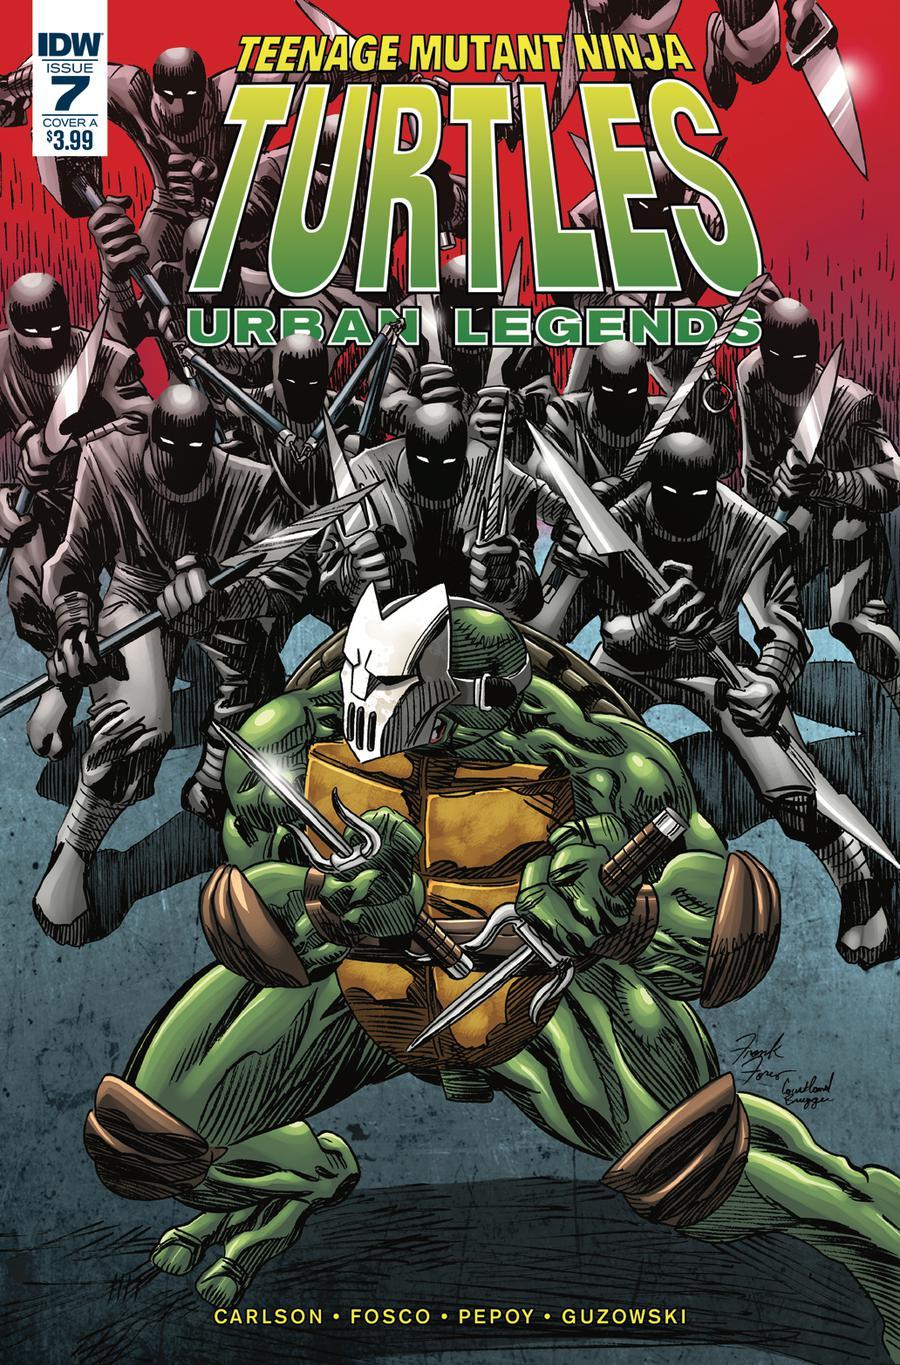 Teenage Mutant Ninja Turtles Urban Legends Vol. 1 #7